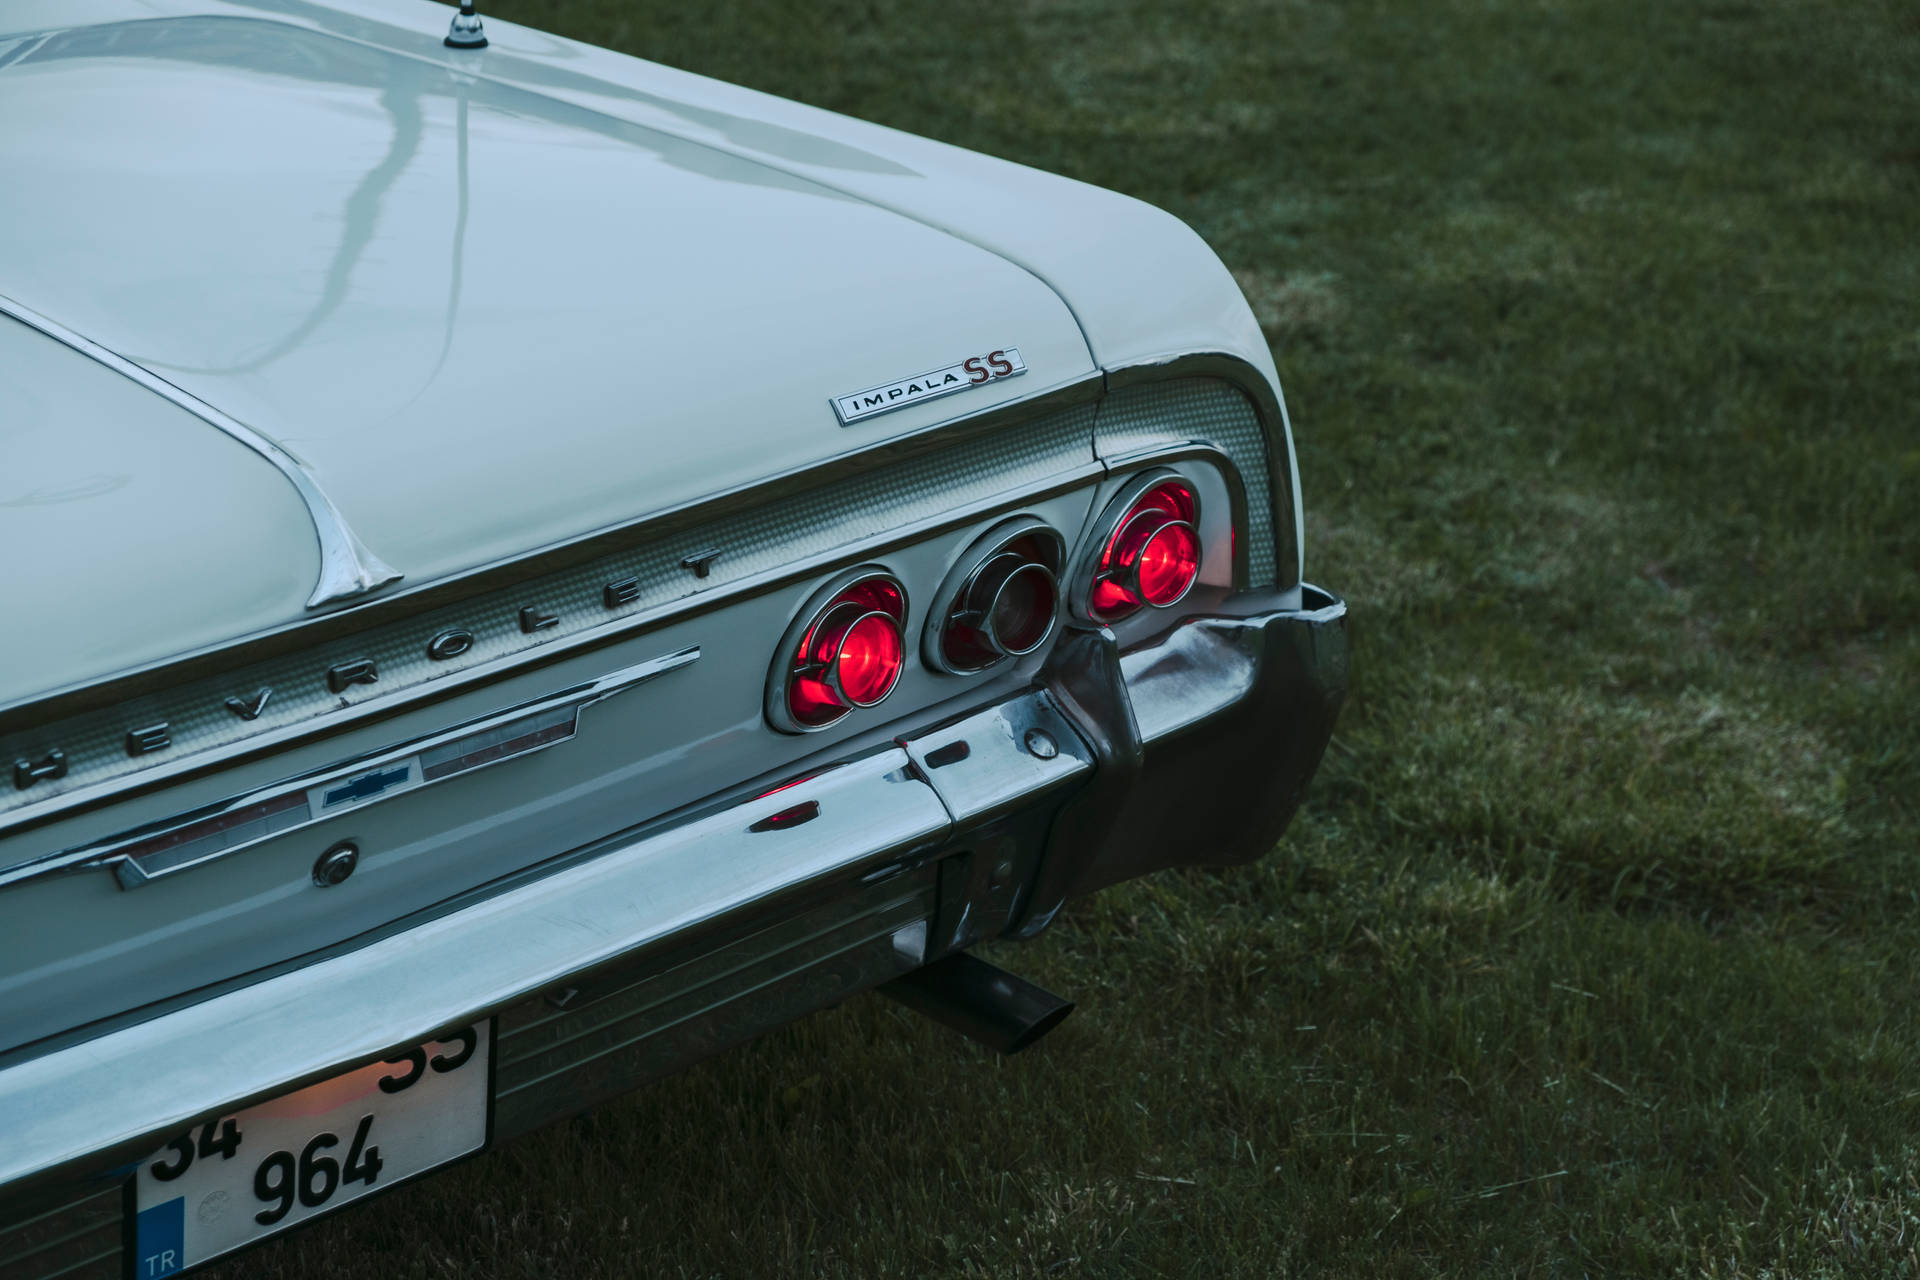 Lowrider Impala Ss Back Background